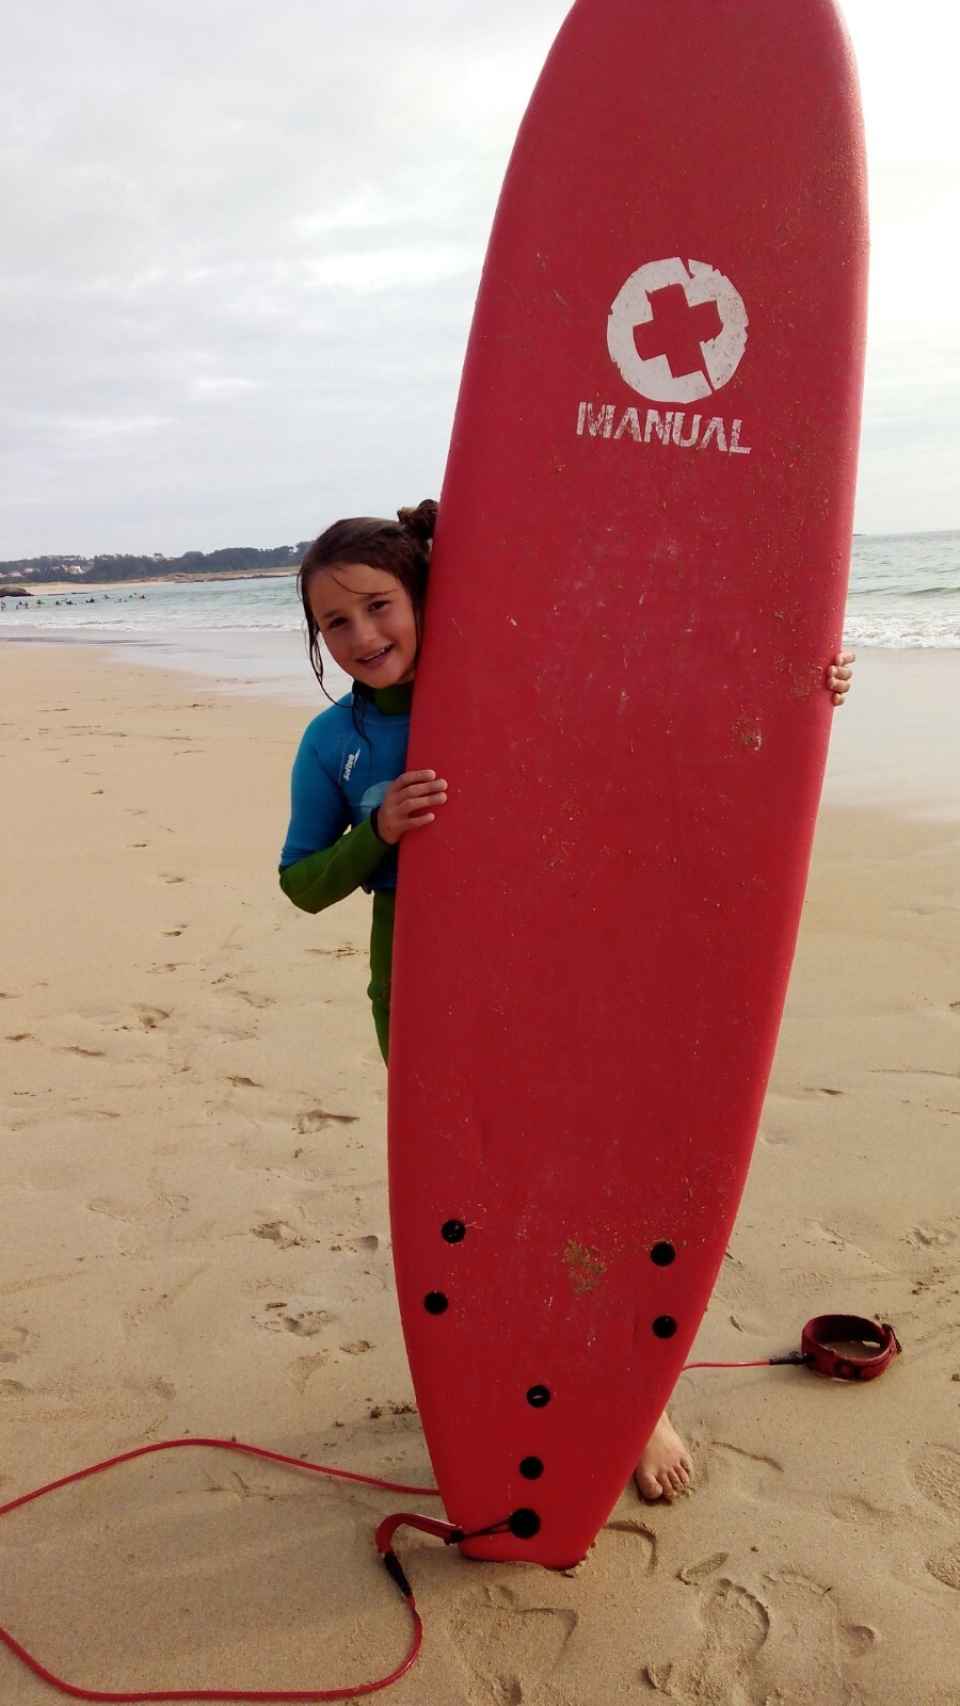 Annia practicando surf durante el verano